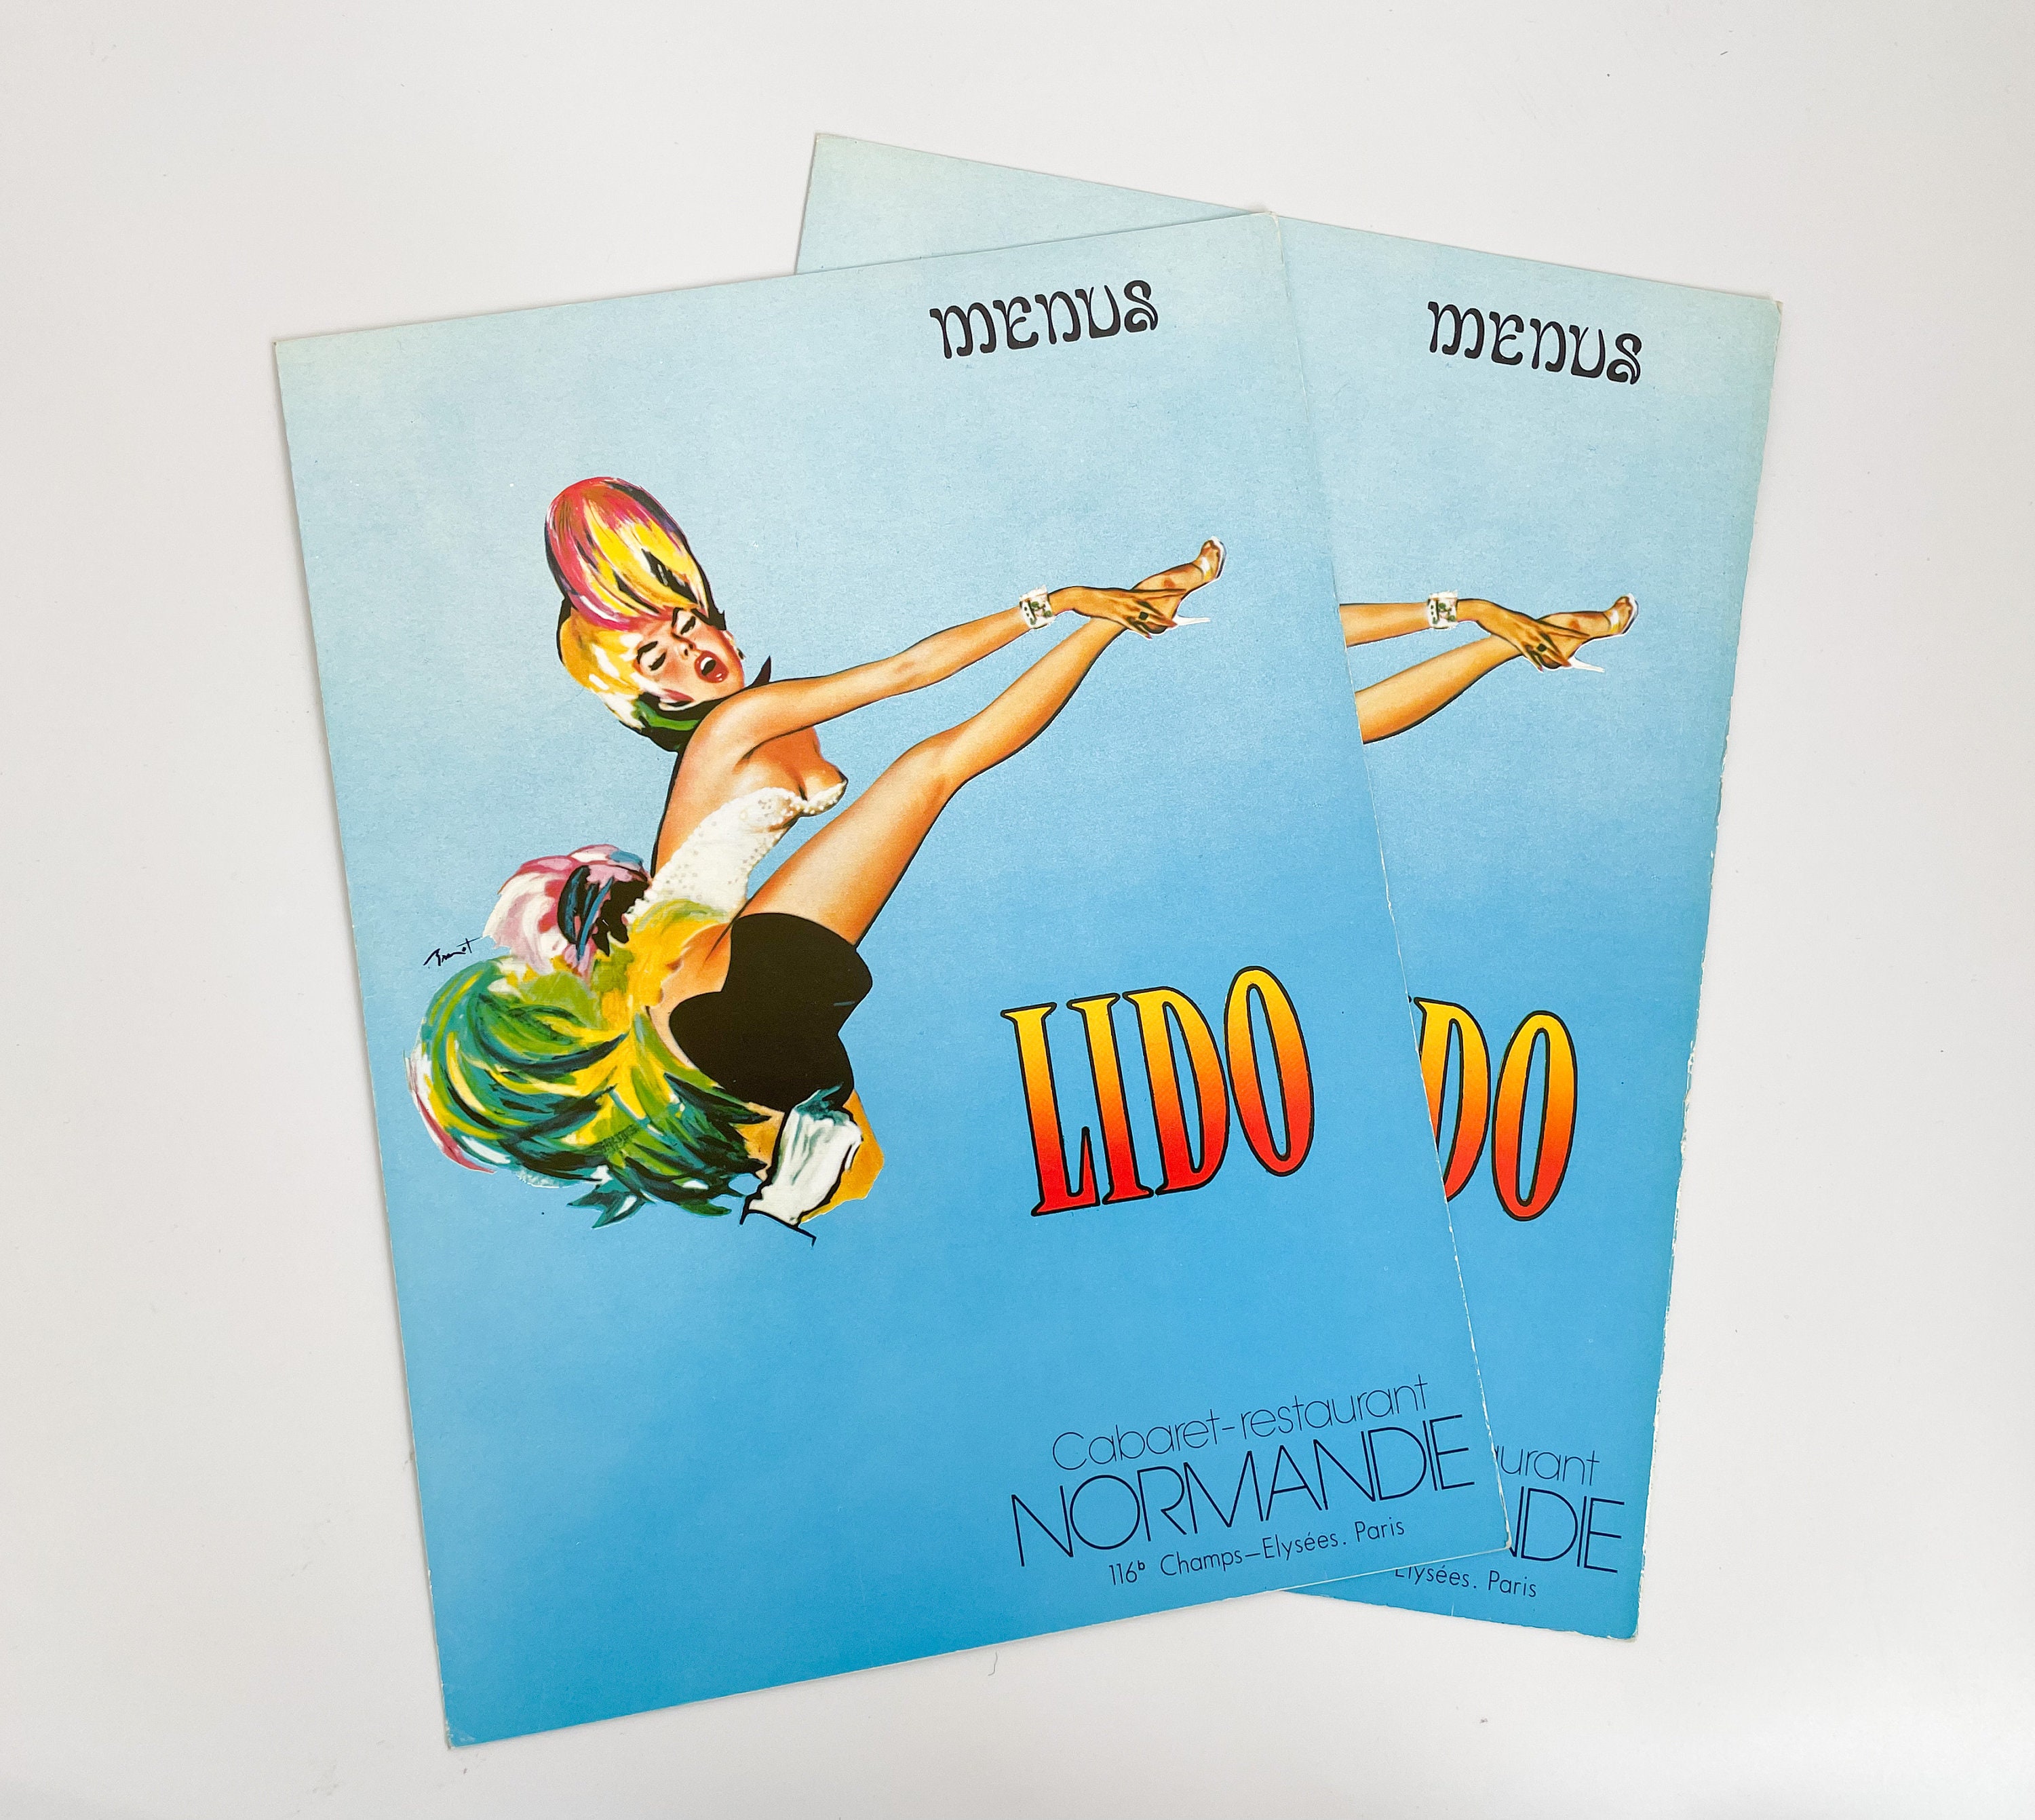 Vintage Poster Ad - Lido Cabaret - Champs-Élysées Paris, France - Bonjour  la Nuit! René Gruau (Hello Night!) Tote Bag for Sale by Gin Neko